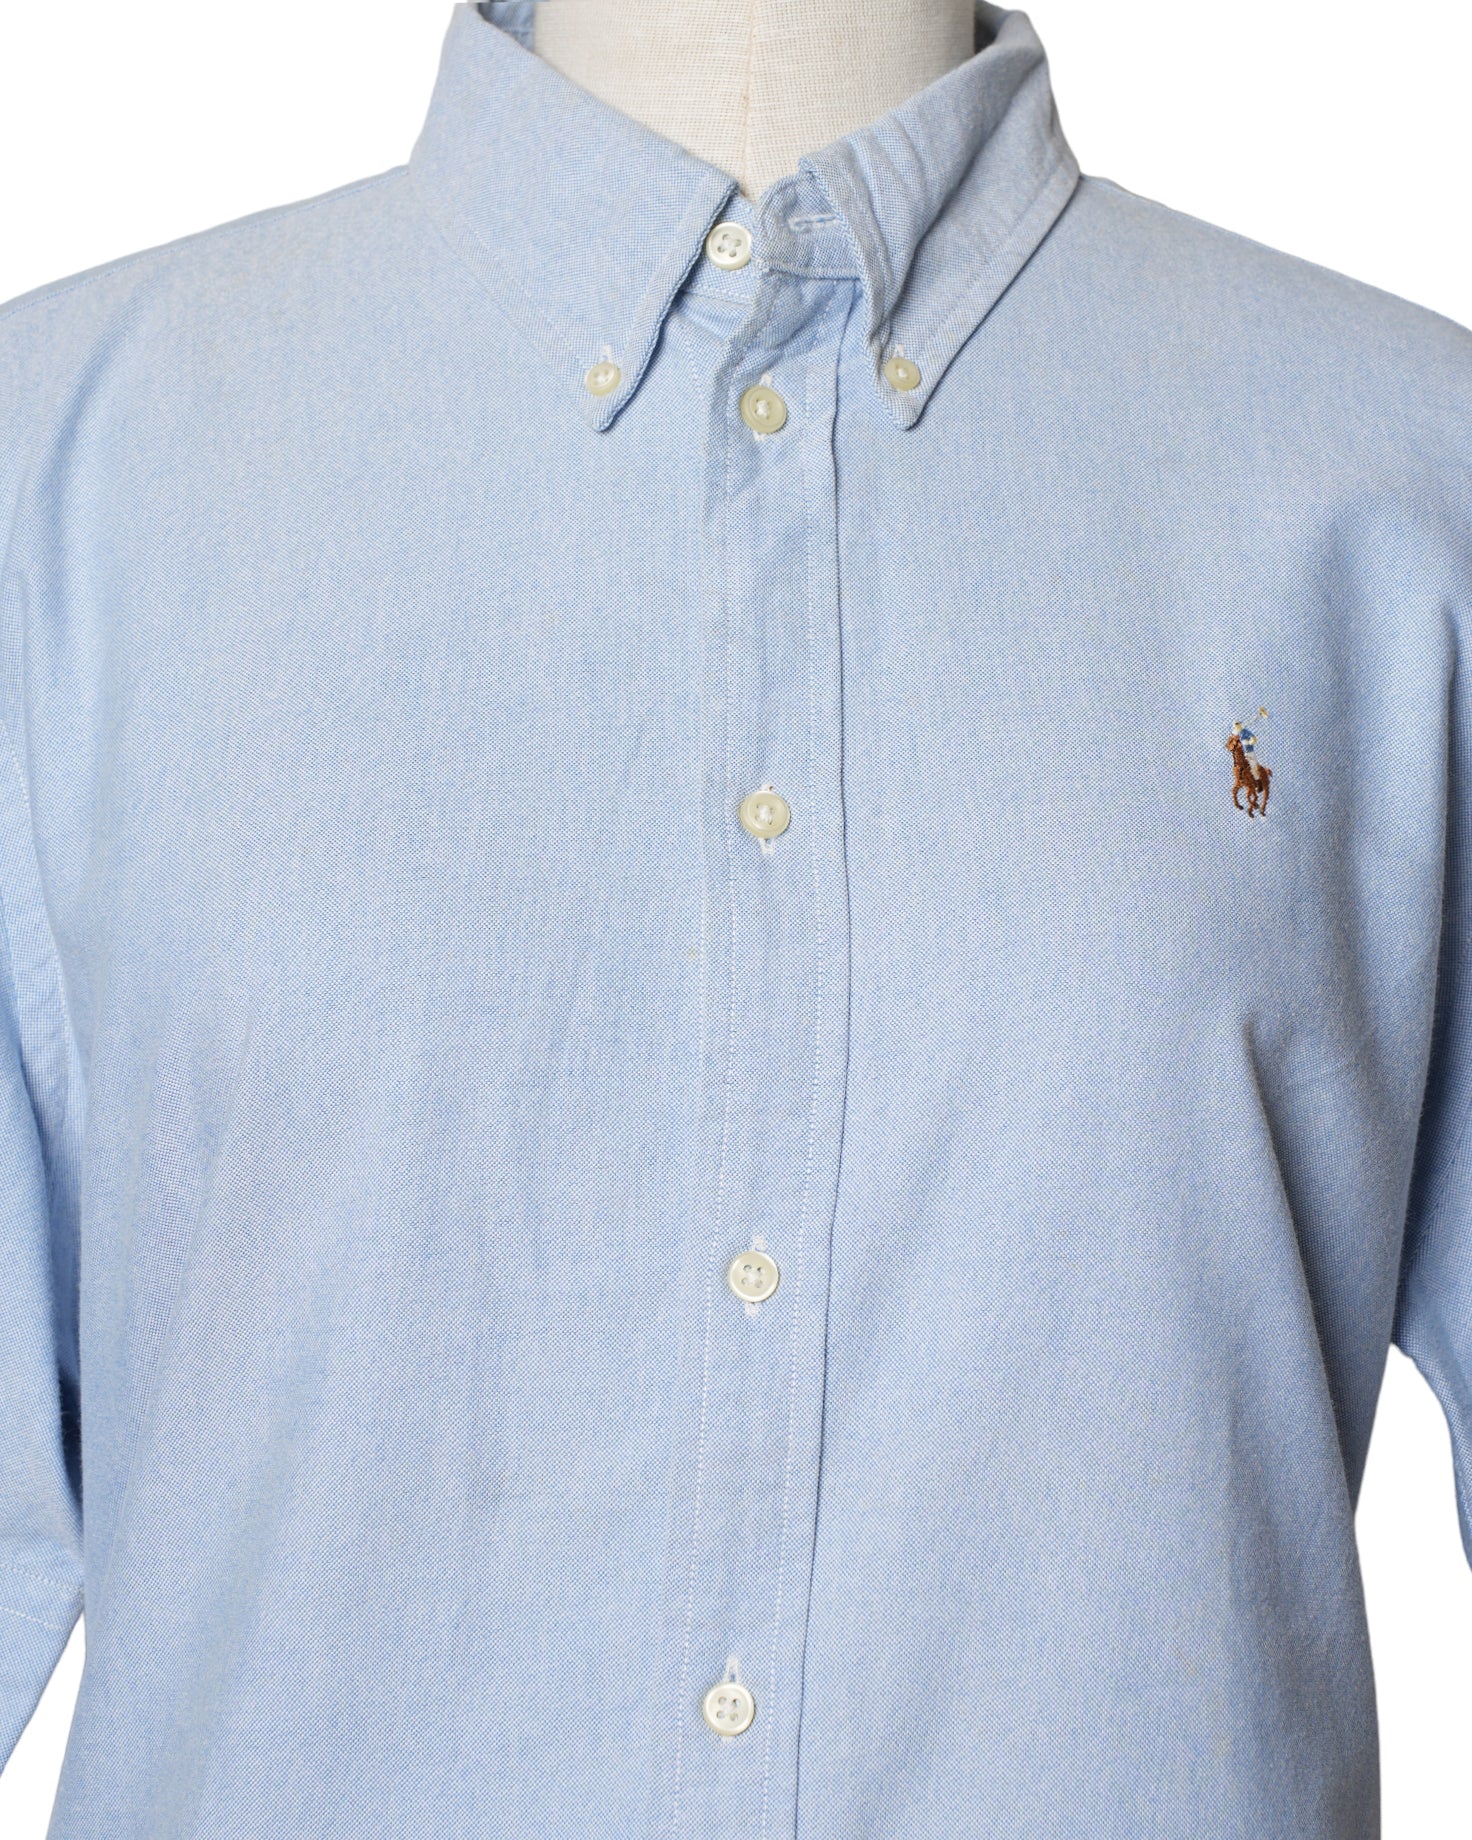 Ralph Lauren Blue Shirt Half Sleeves